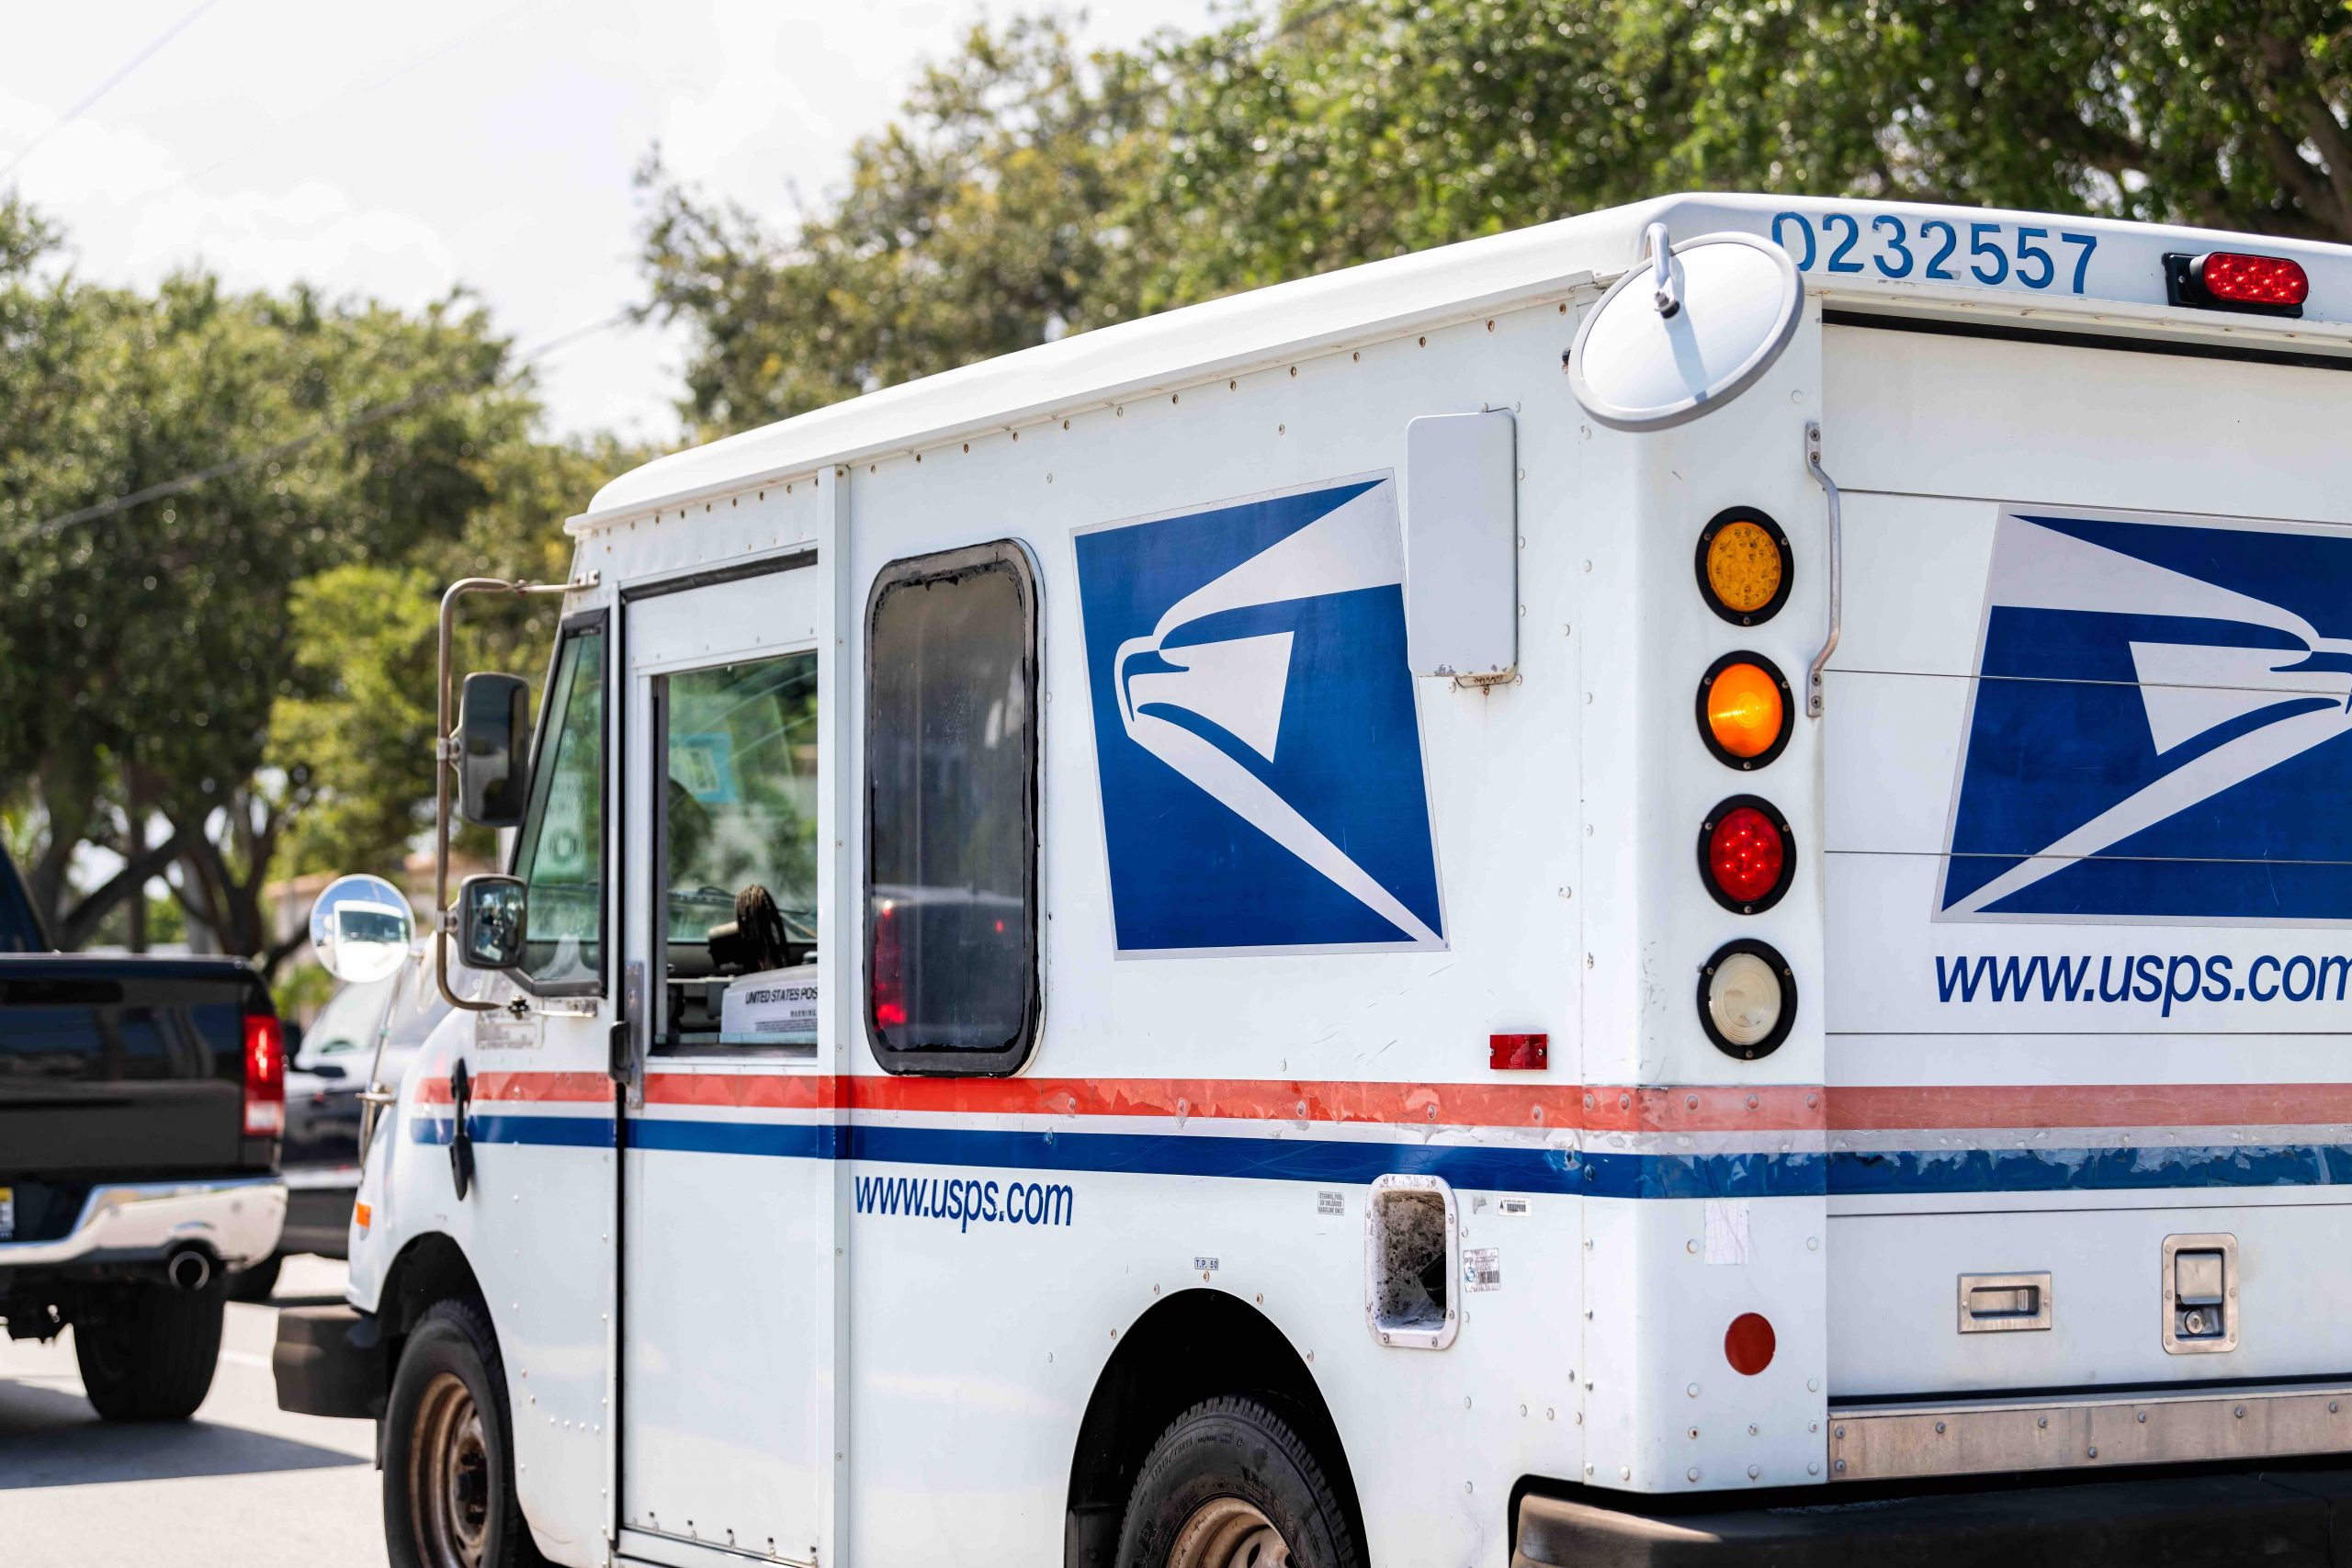 U.S. Postal Service van in traffic